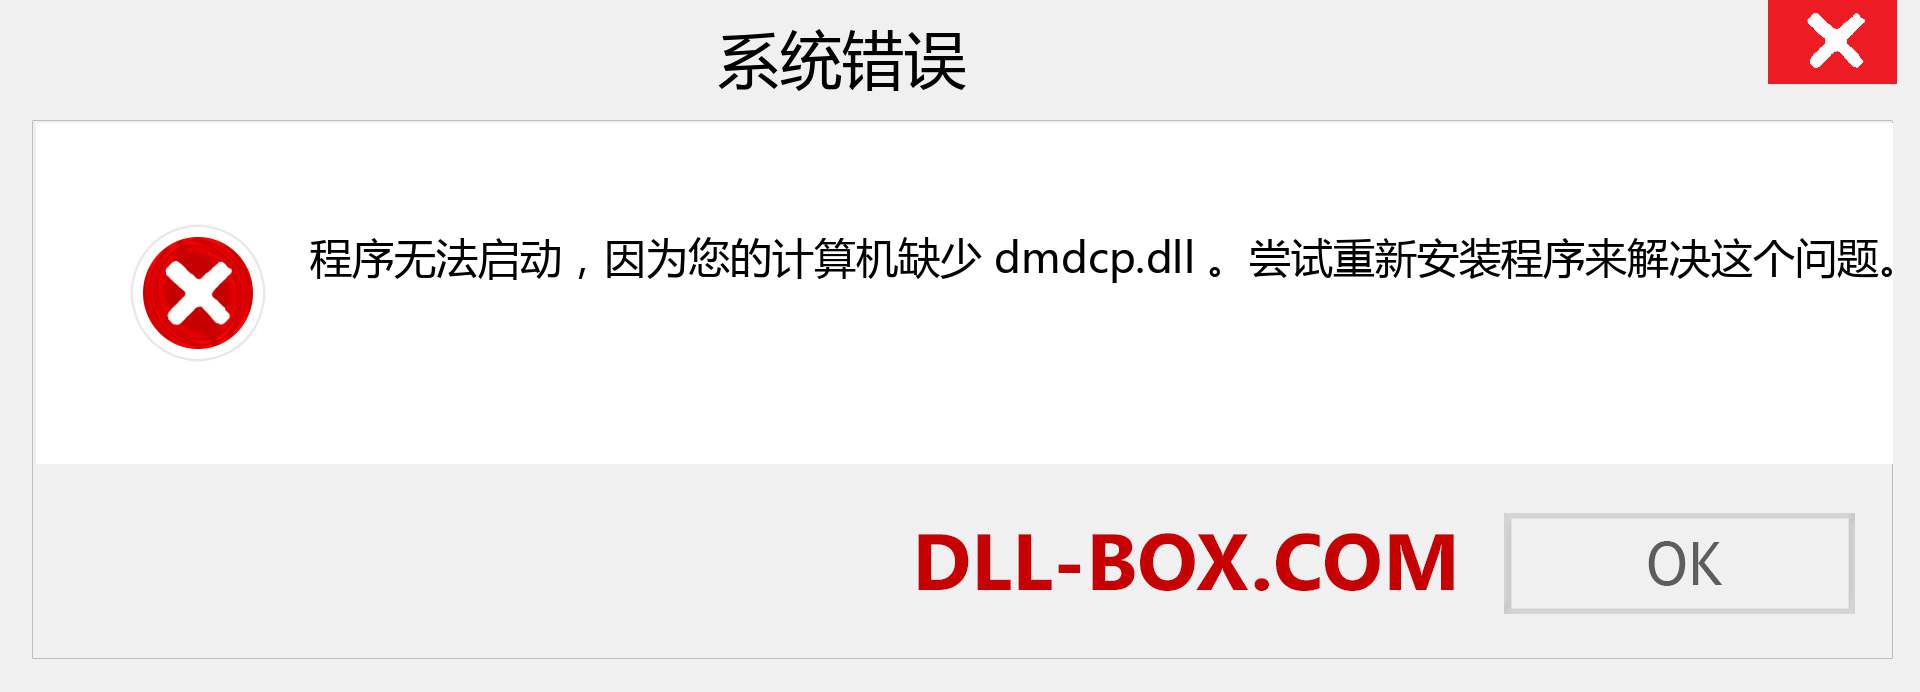 dmdcp.dll 文件丢失？。 适用于 Windows 7、8、10 的下载 - 修复 Windows、照片、图像上的 dmdcp dll 丢失错误